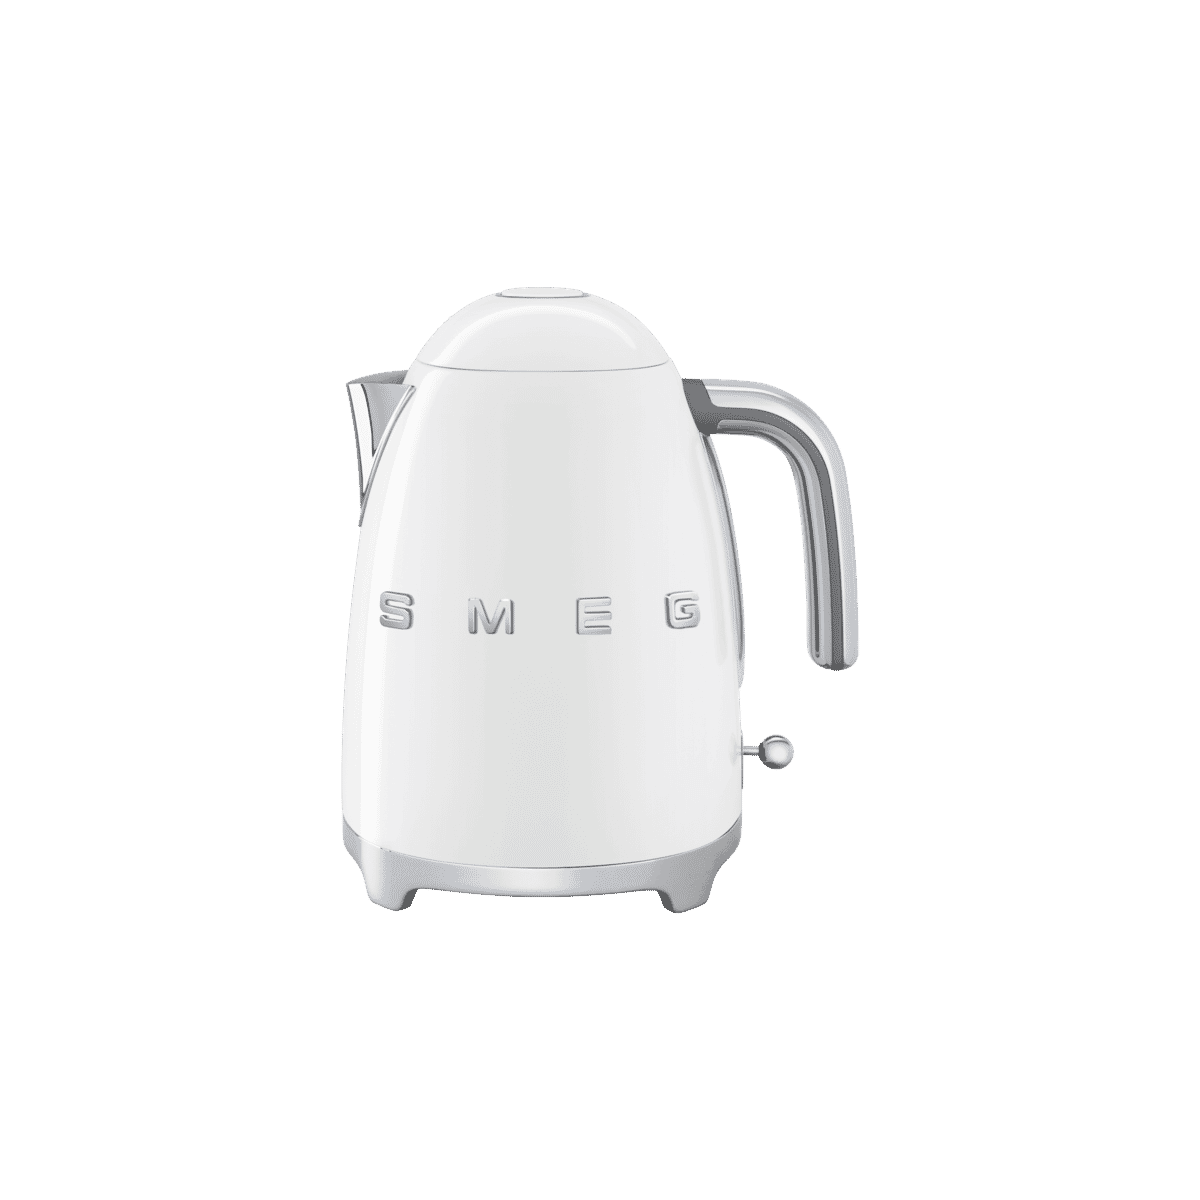 Smeg 50's Style Kettle White - Sperrin Electronics